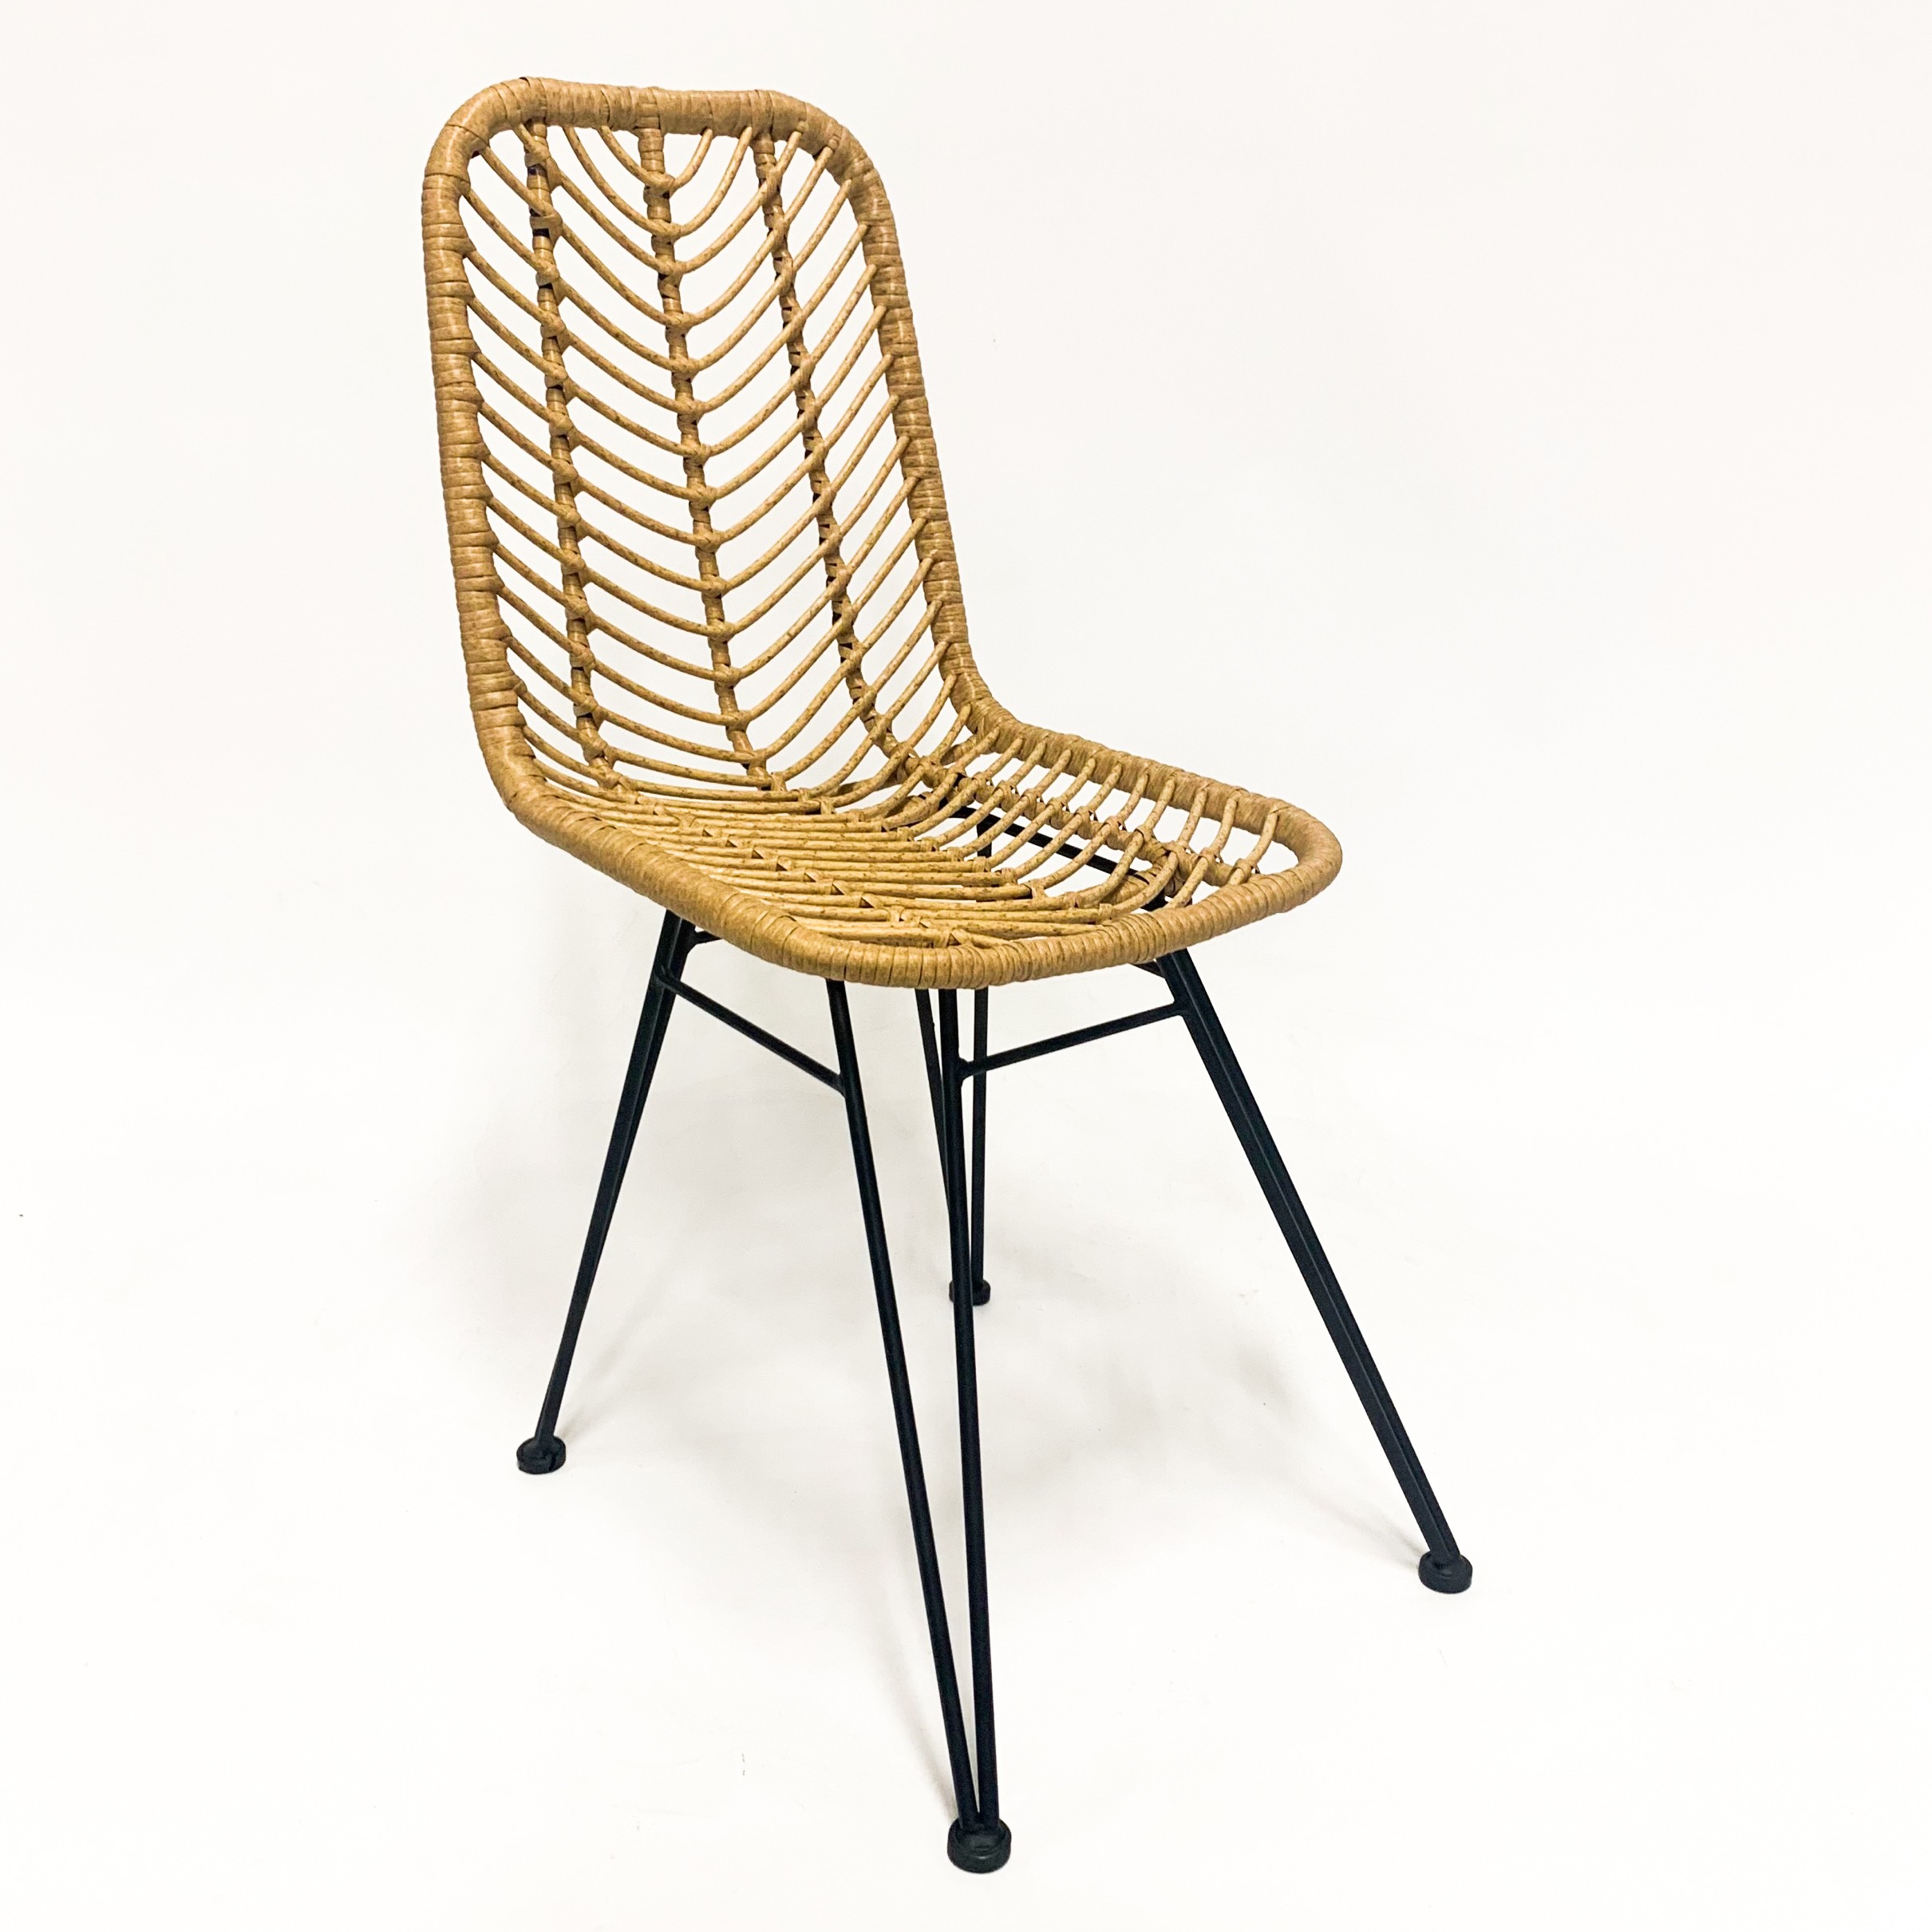 Eerlijk Monica Anoniem Le Midi rotan stoel voor buiten - rotan stoelen - designmeubels